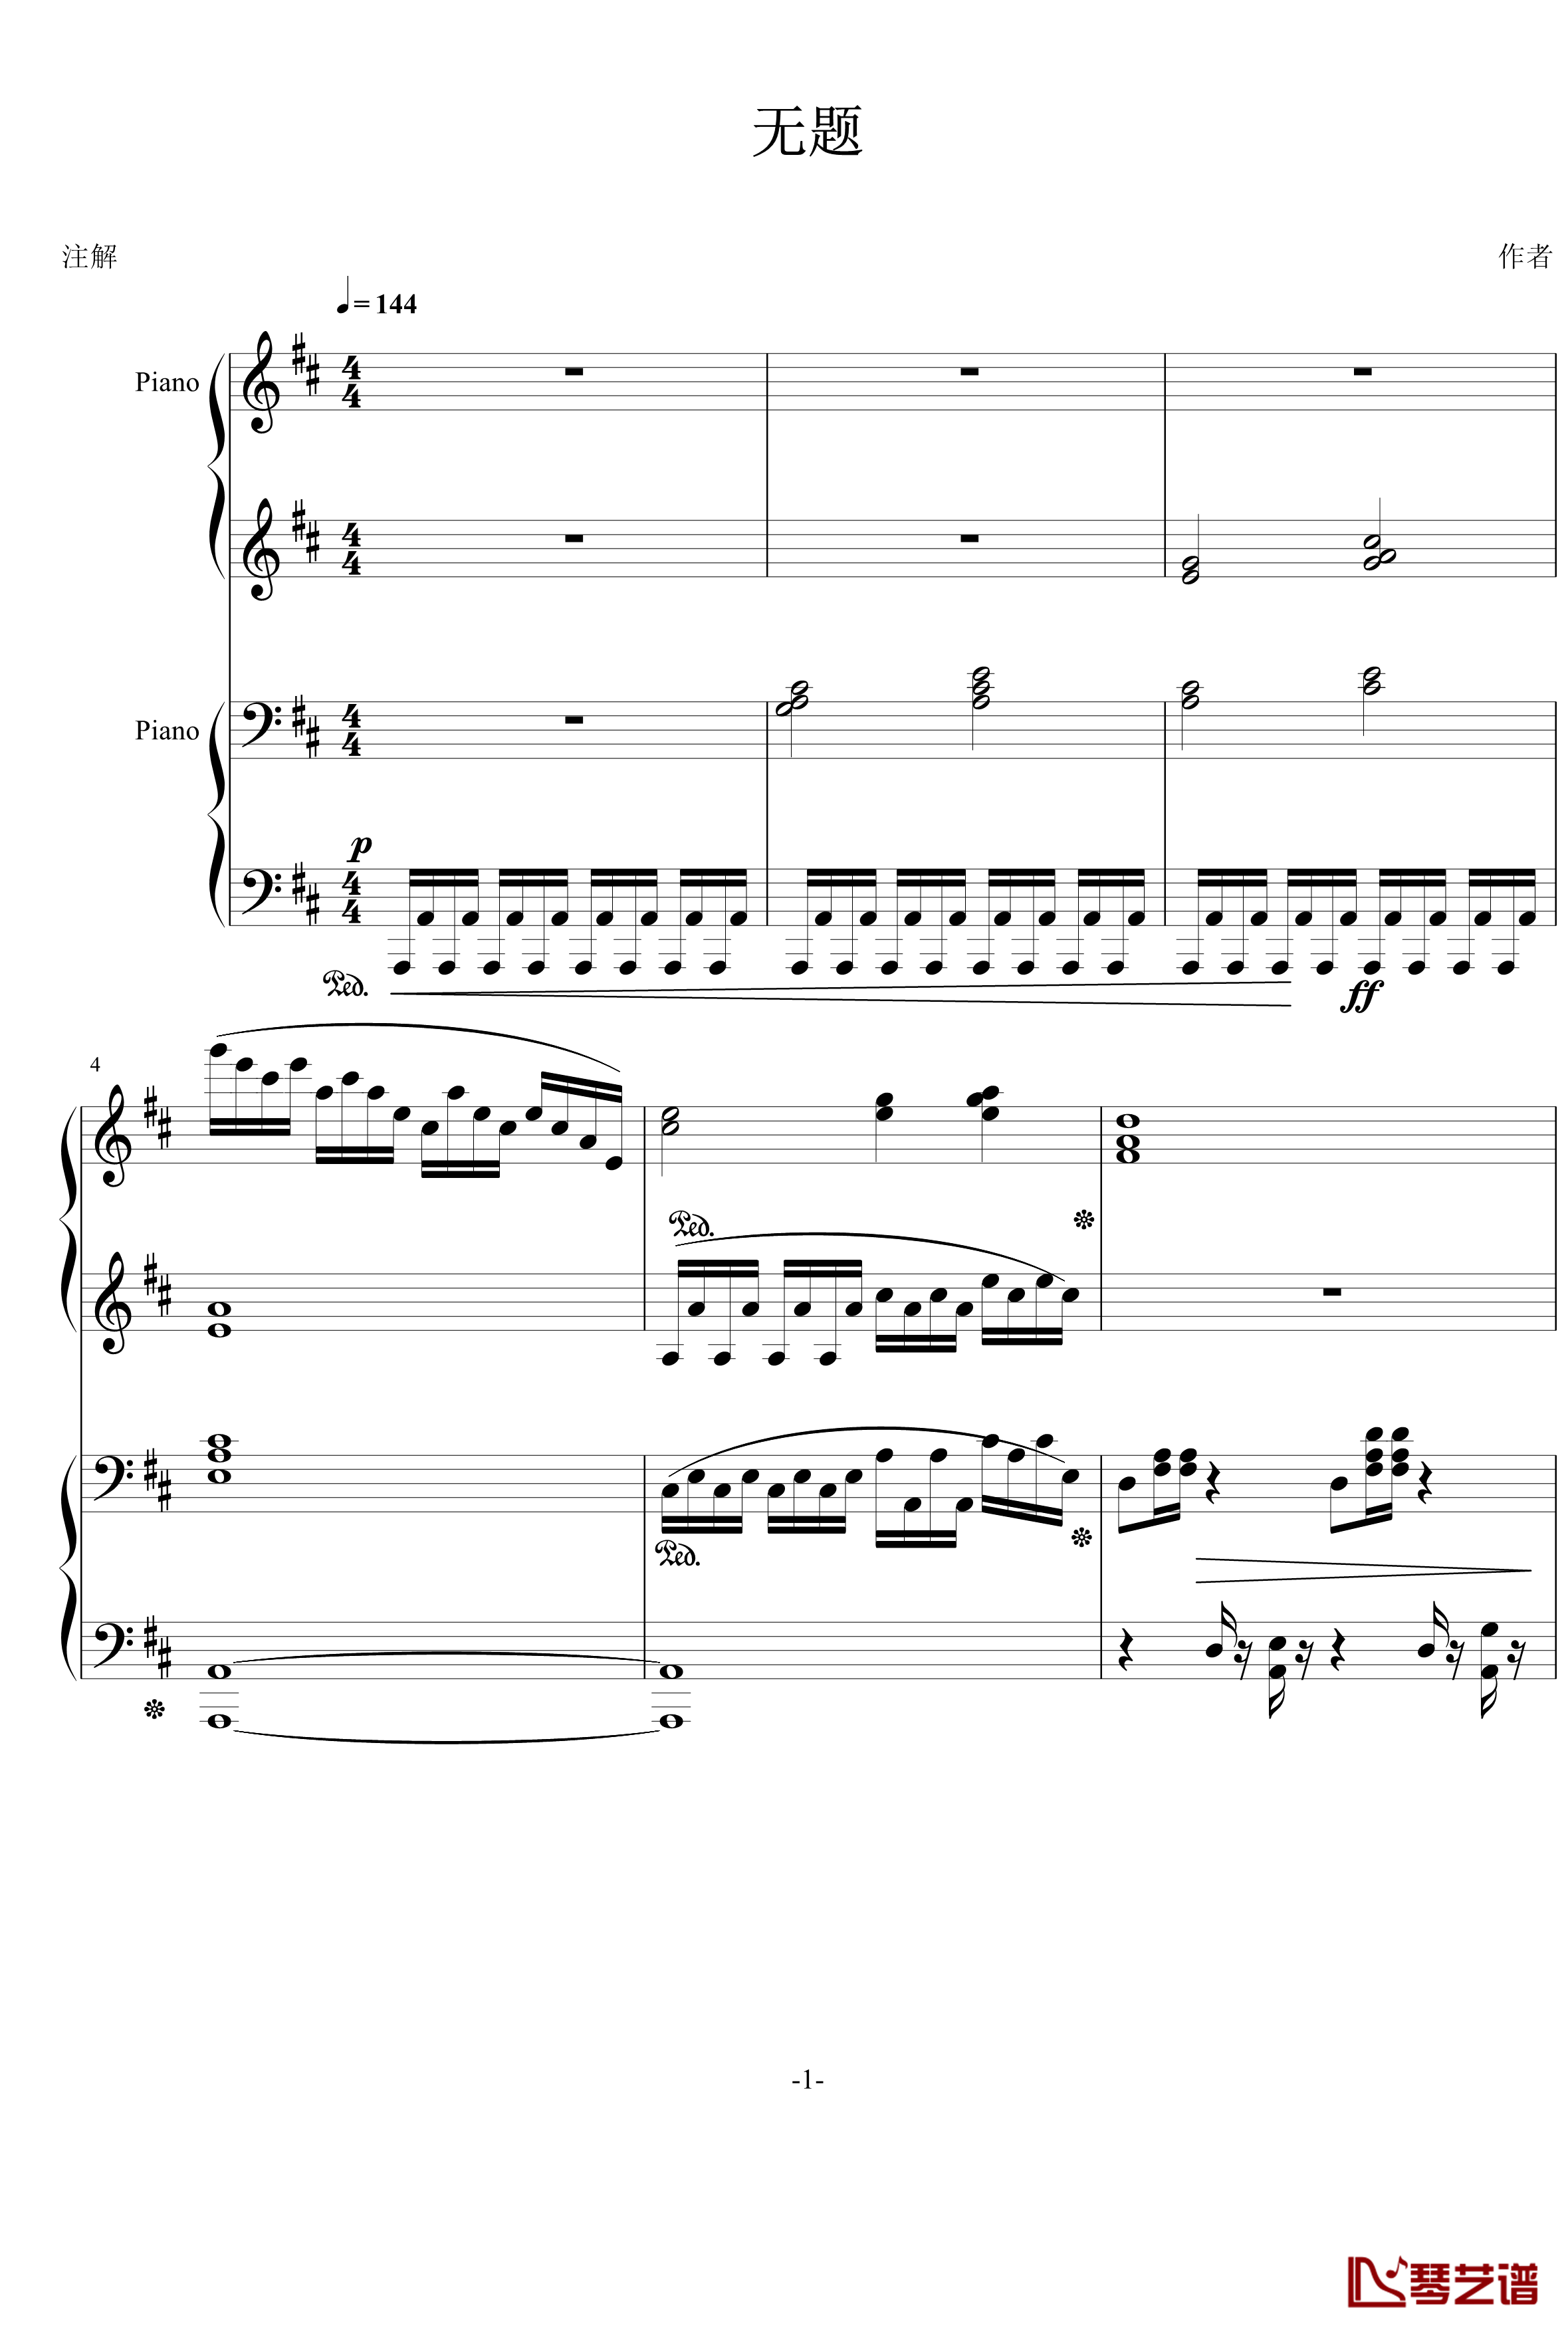 无题钢琴谱-军歌-北平乐师1